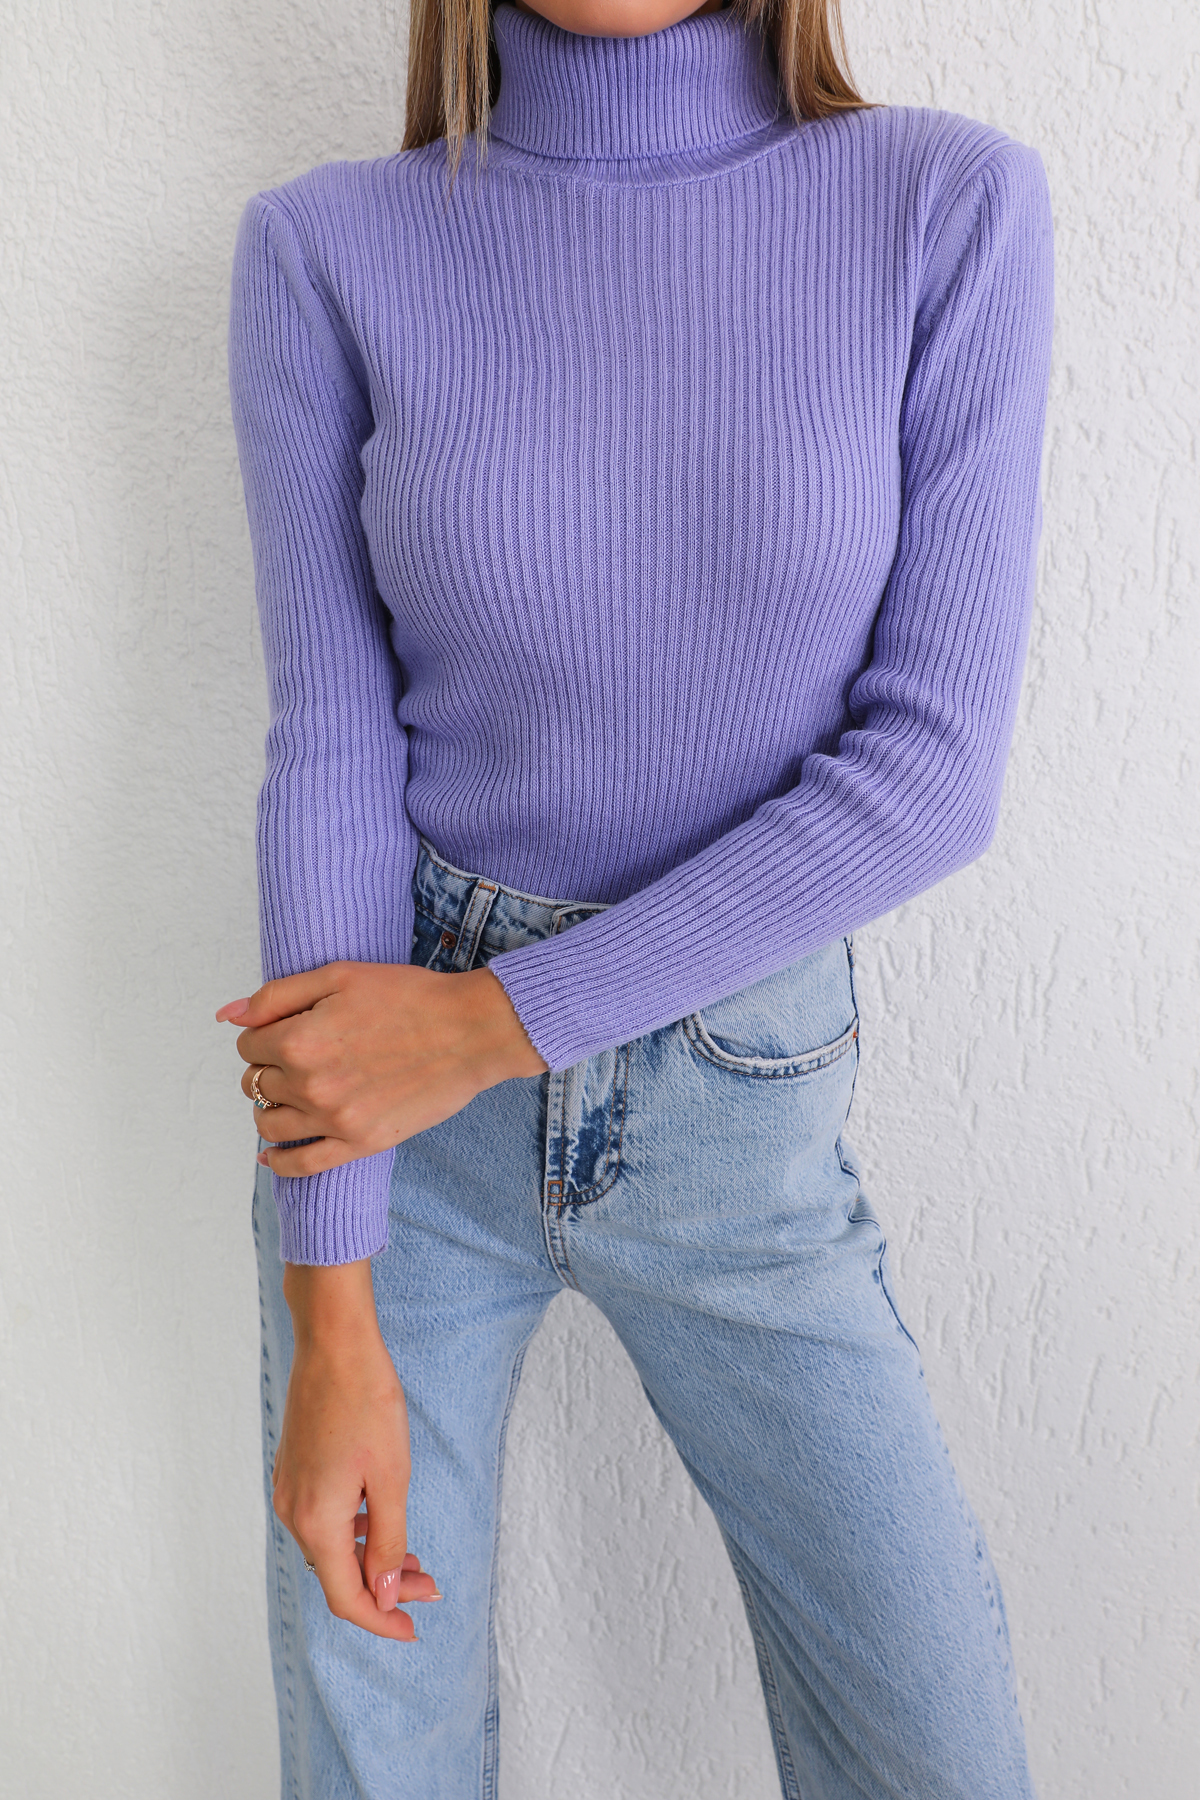 Levně BİKELİFE Women's Lilac Lycra Stretchy Turtleneck Knitwear Sweater